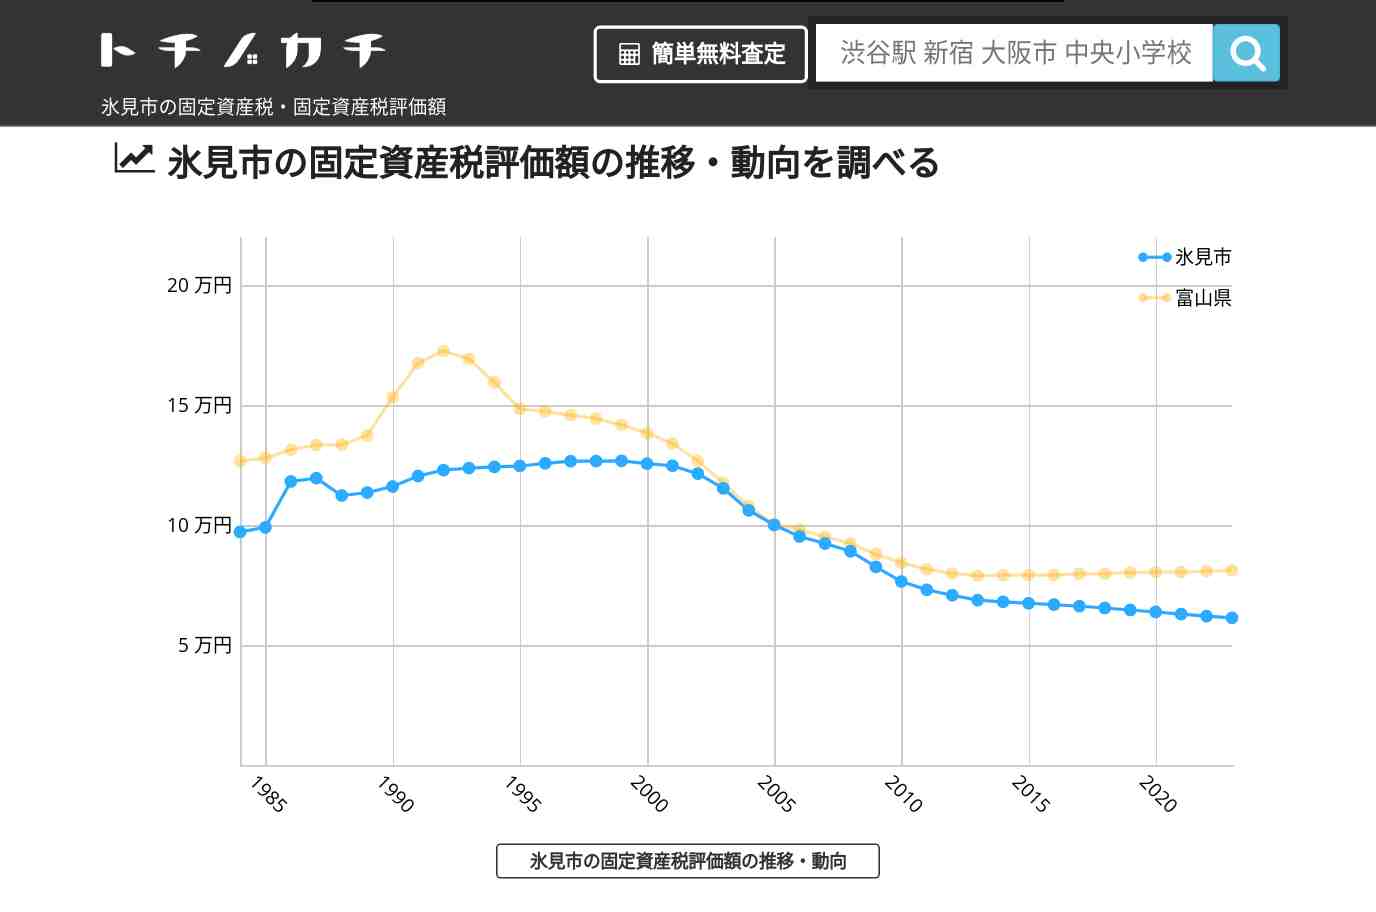 十三中学校(富山県 氷見市)周辺の固定資産税・固定資産税評価額 | トチノカチ